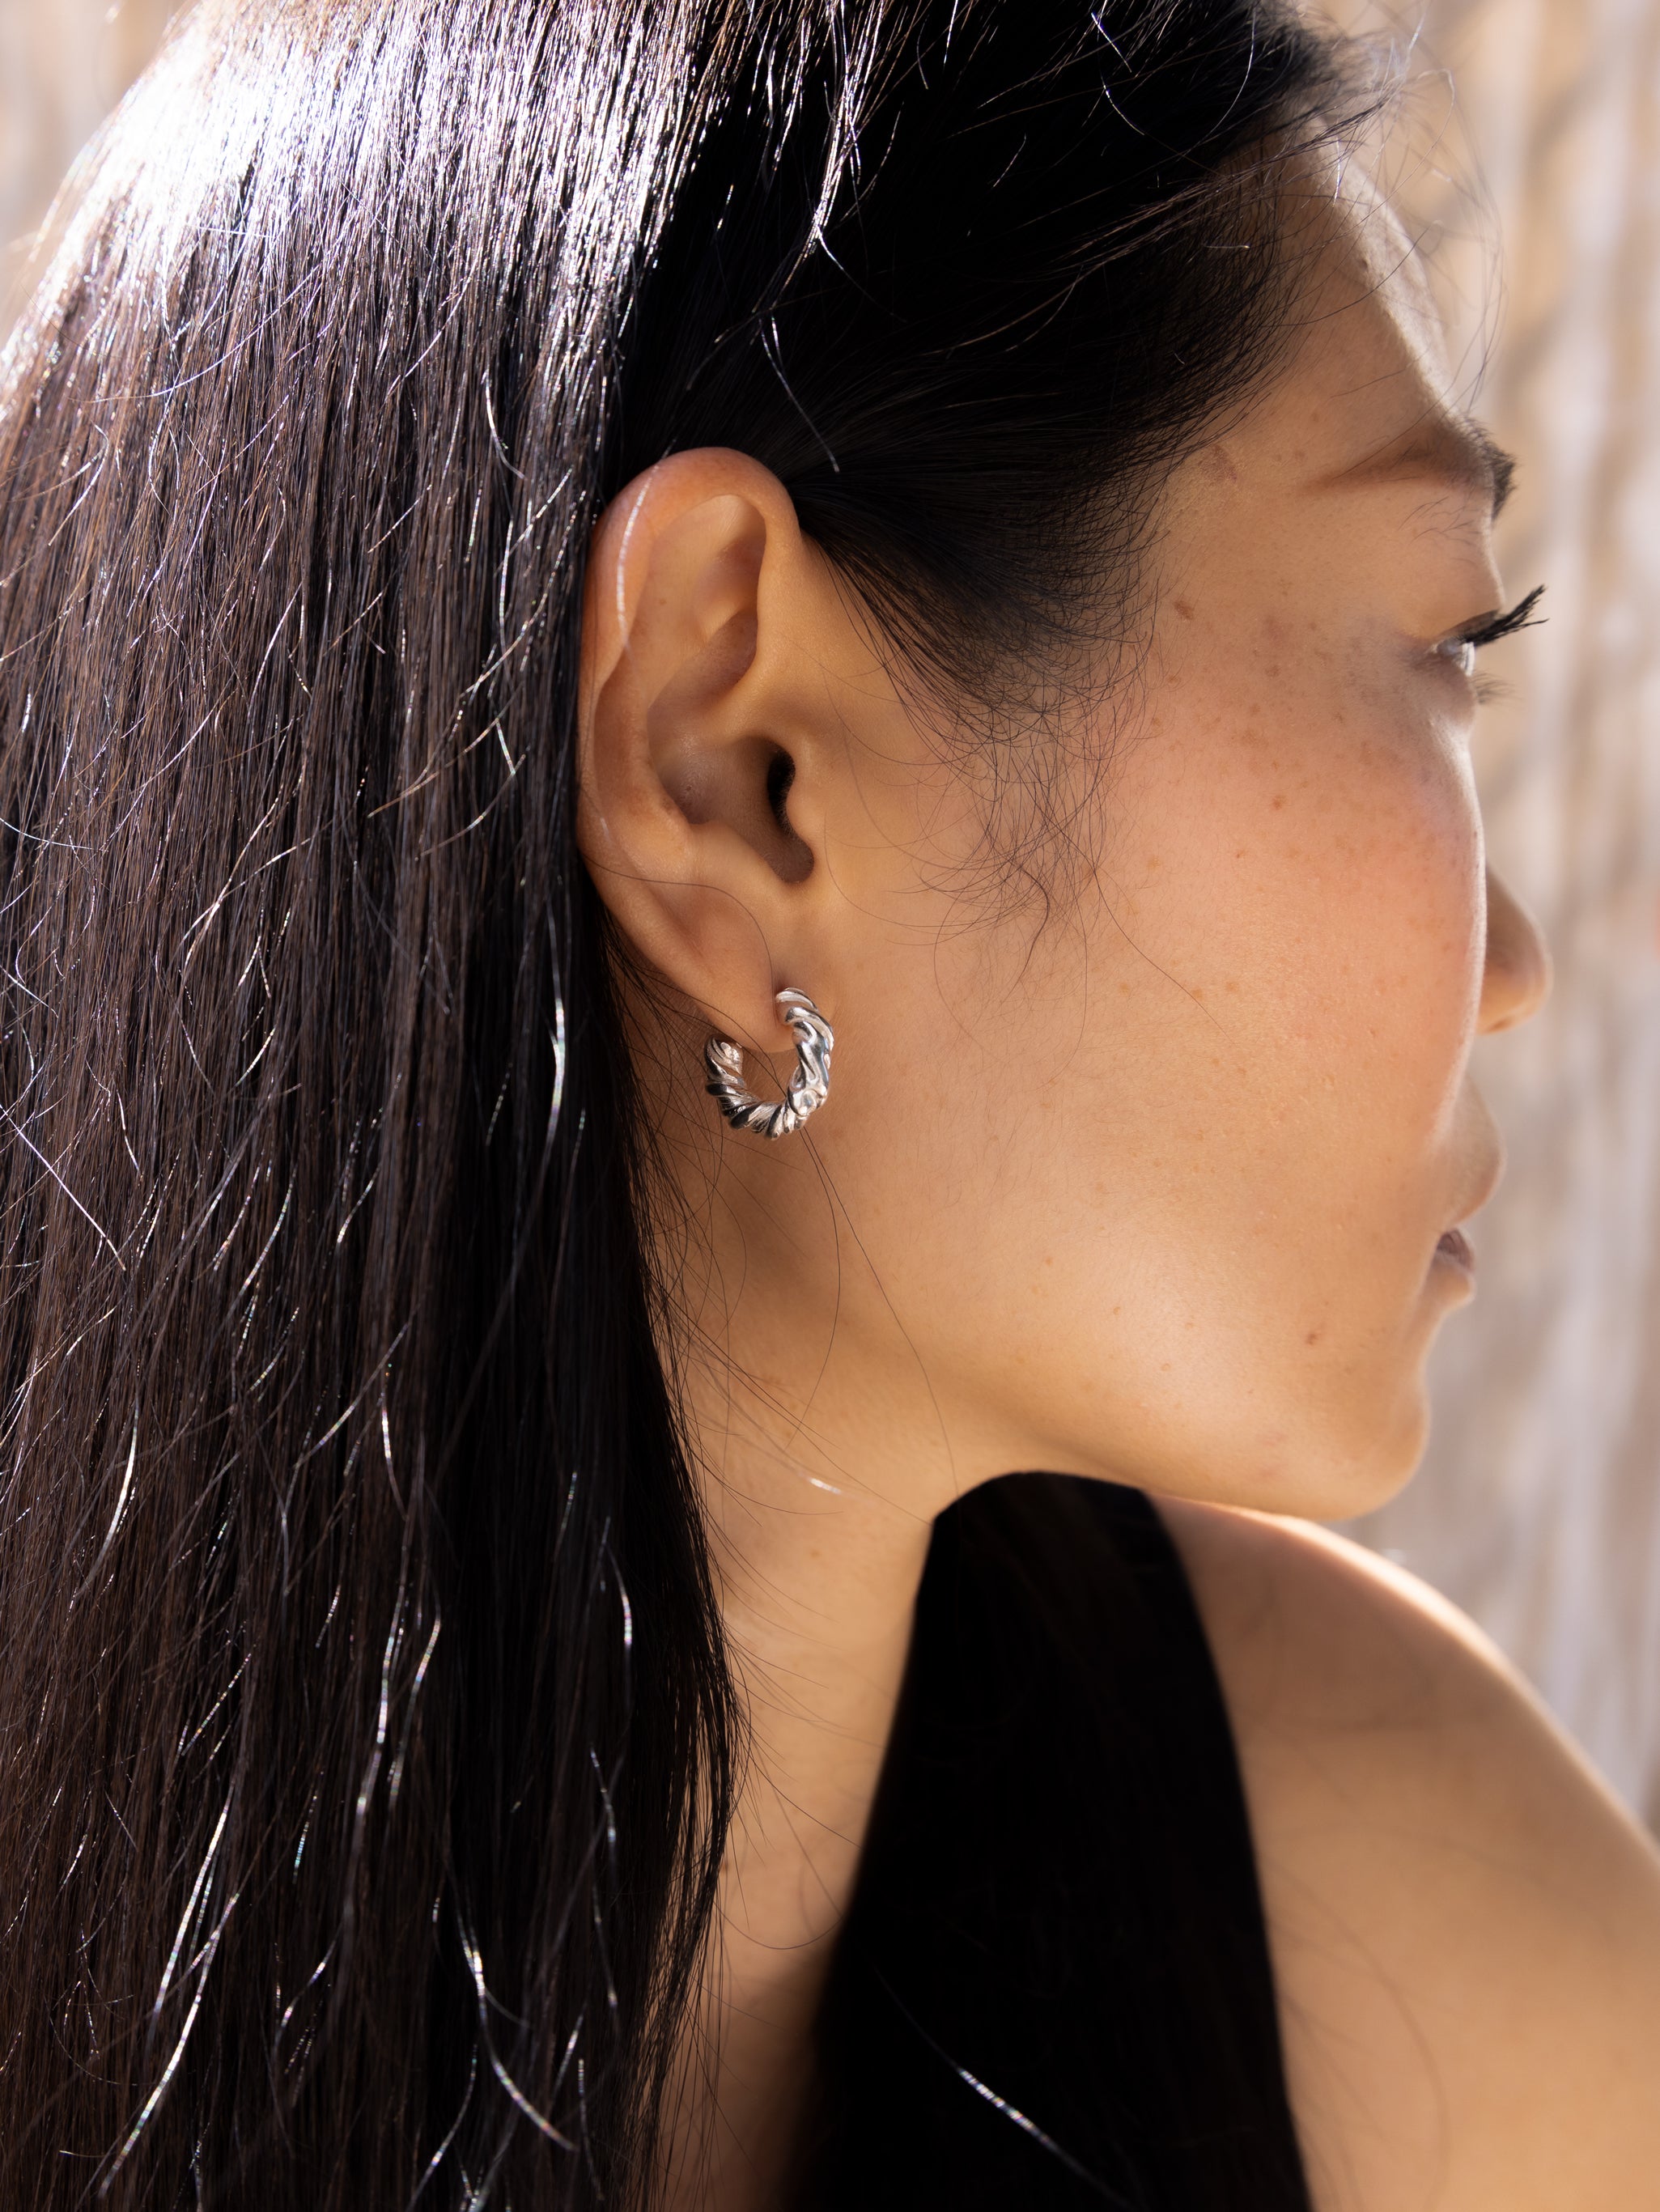 Twisted Hoop Earrings | Recycled Silver